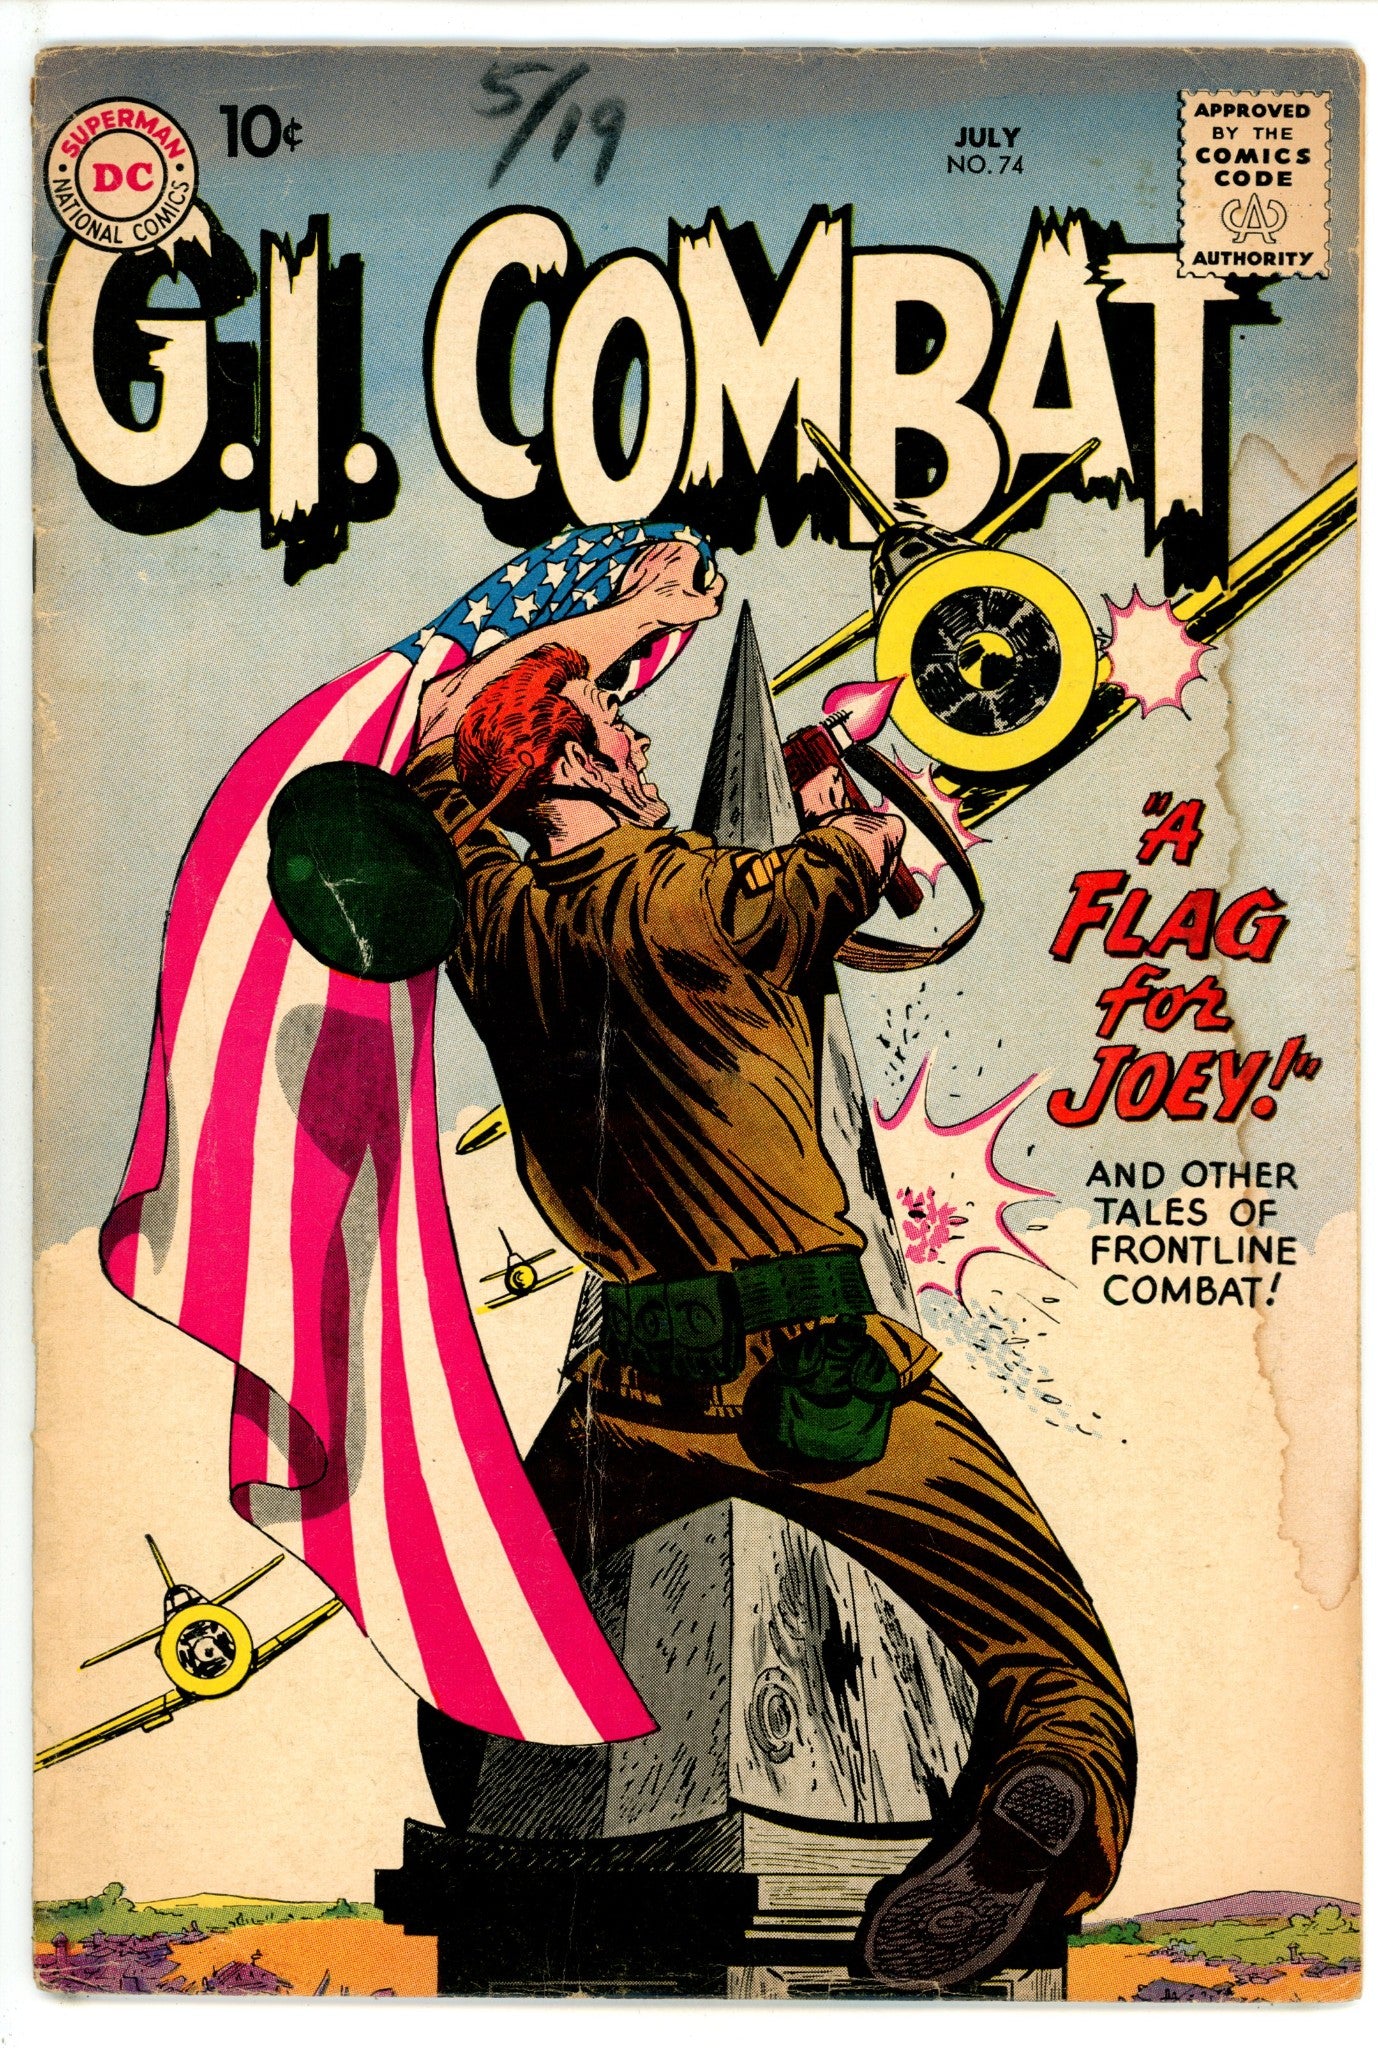 G.I. Combat Vol 1 74 VG- (3.5) (1959) 